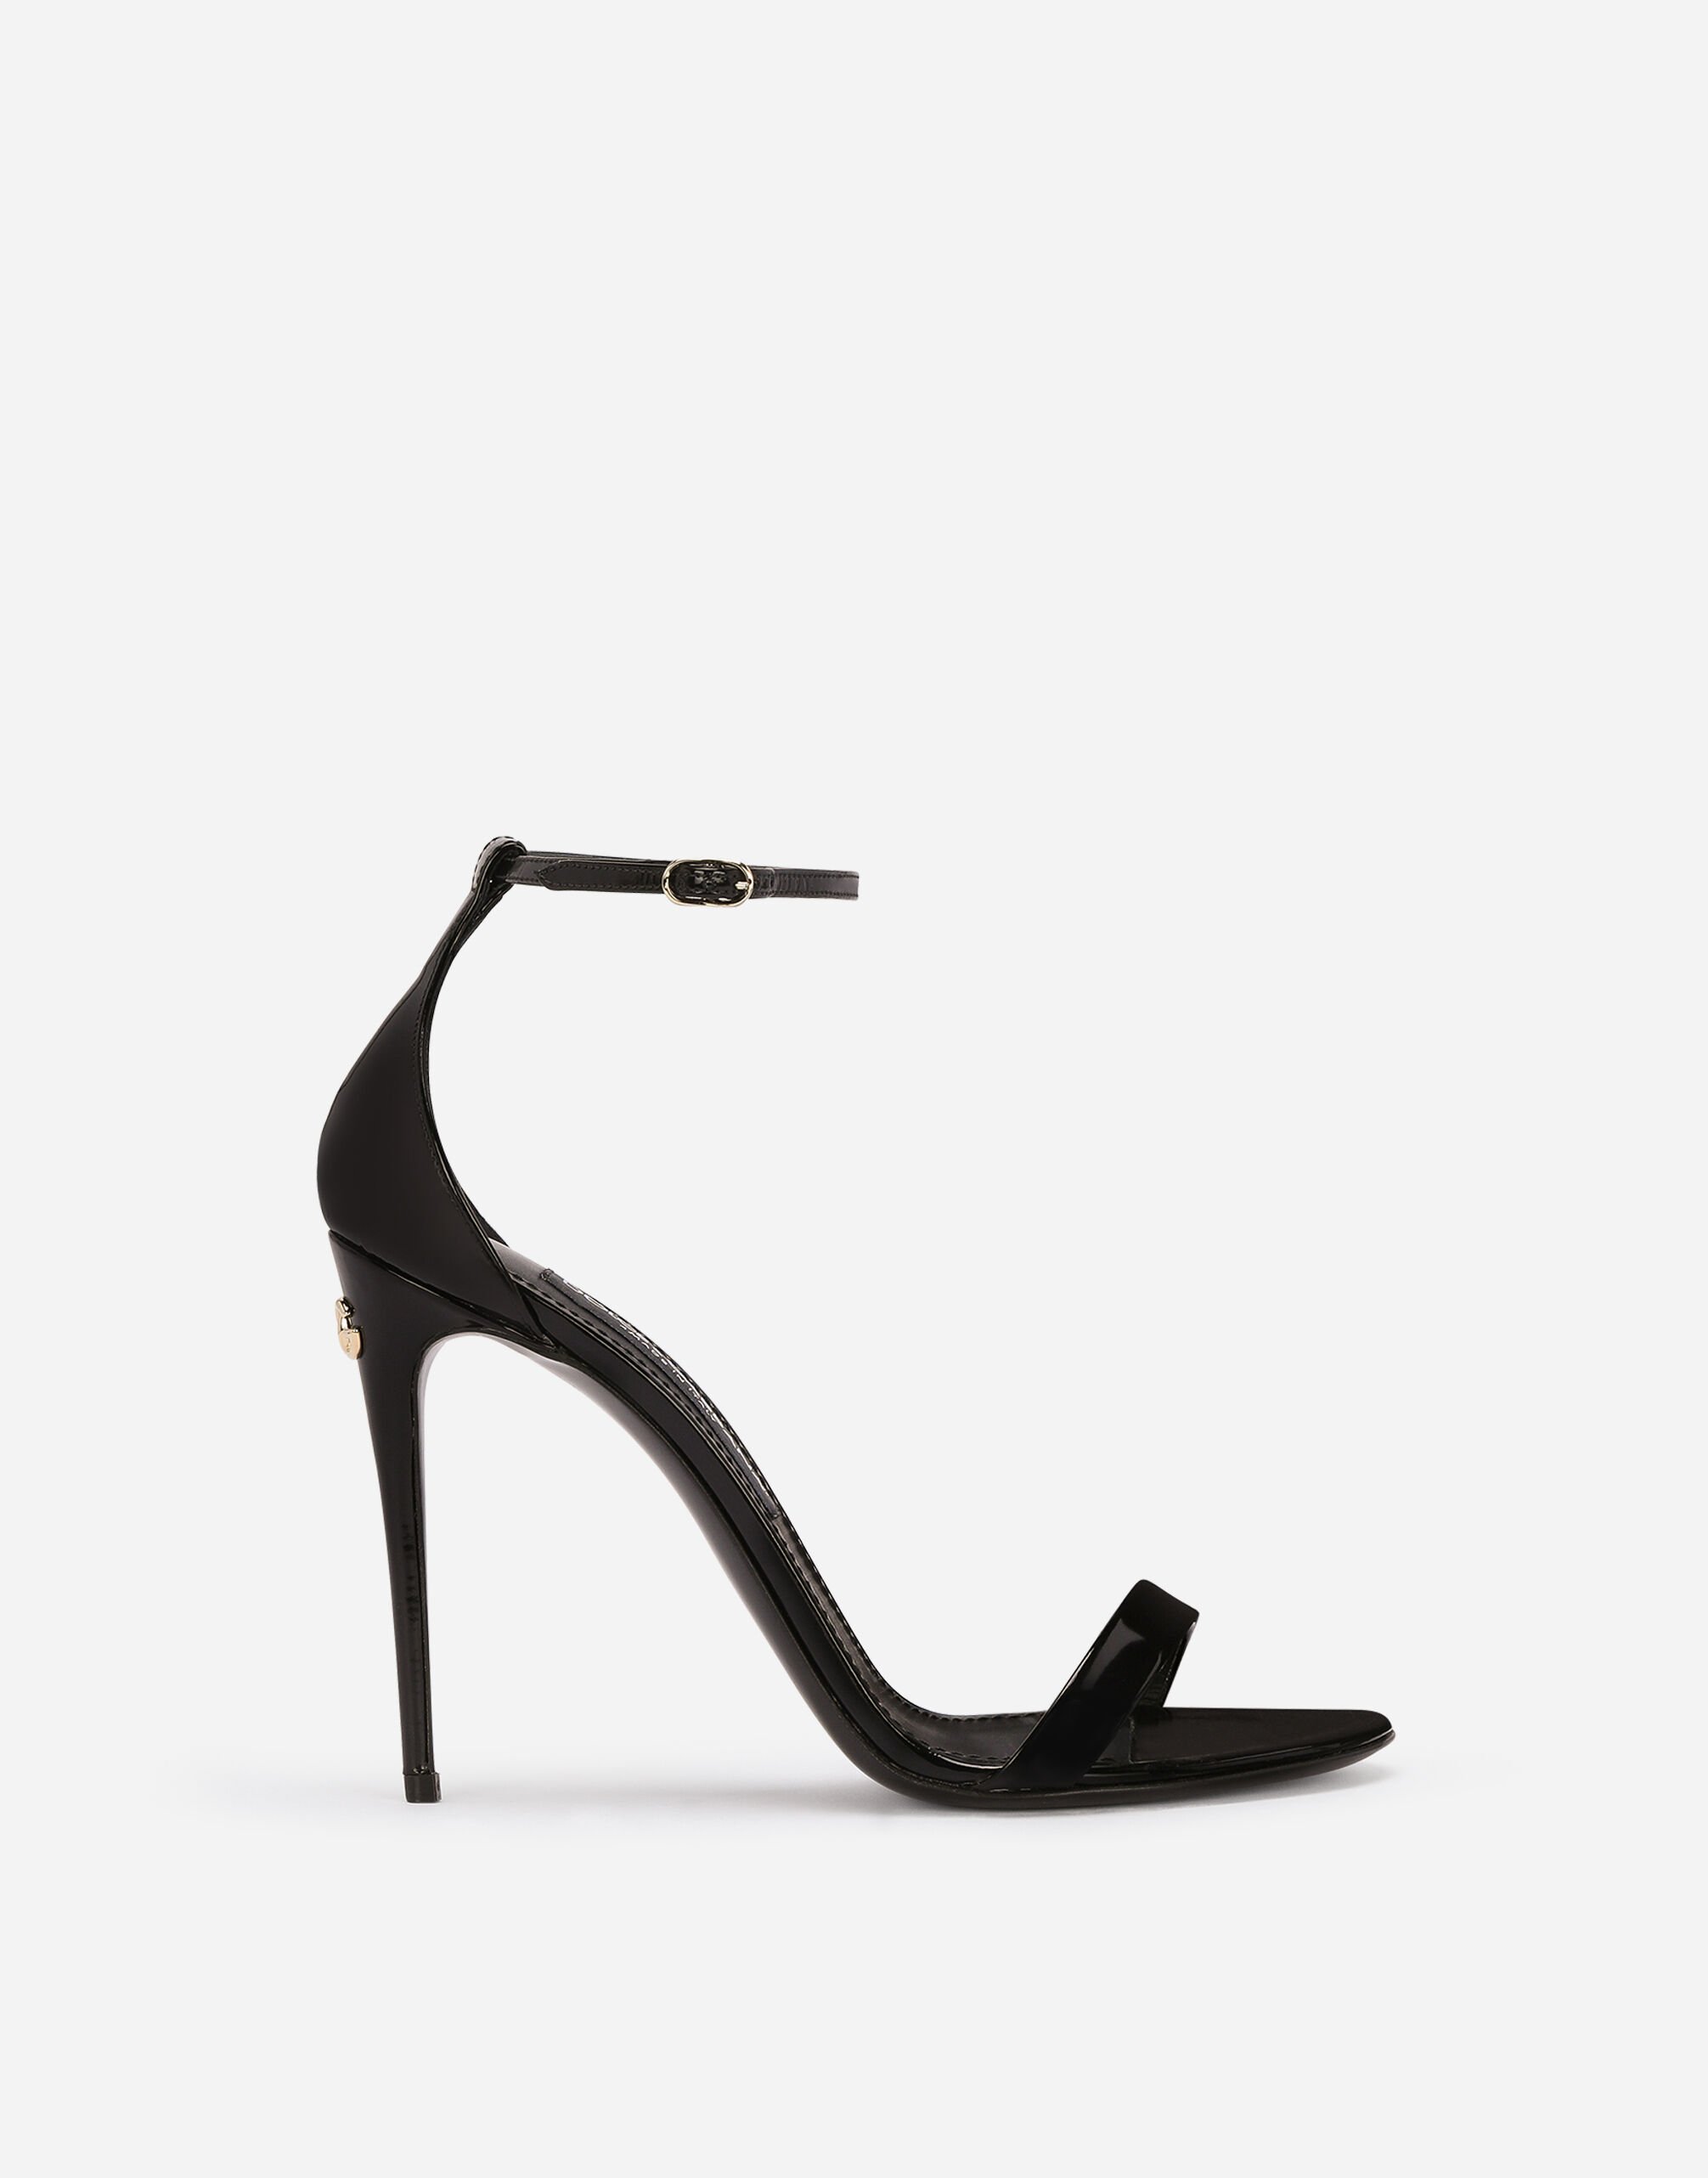 Dolce & Gabbana Polished calfskin sandals Black VG6186VN187